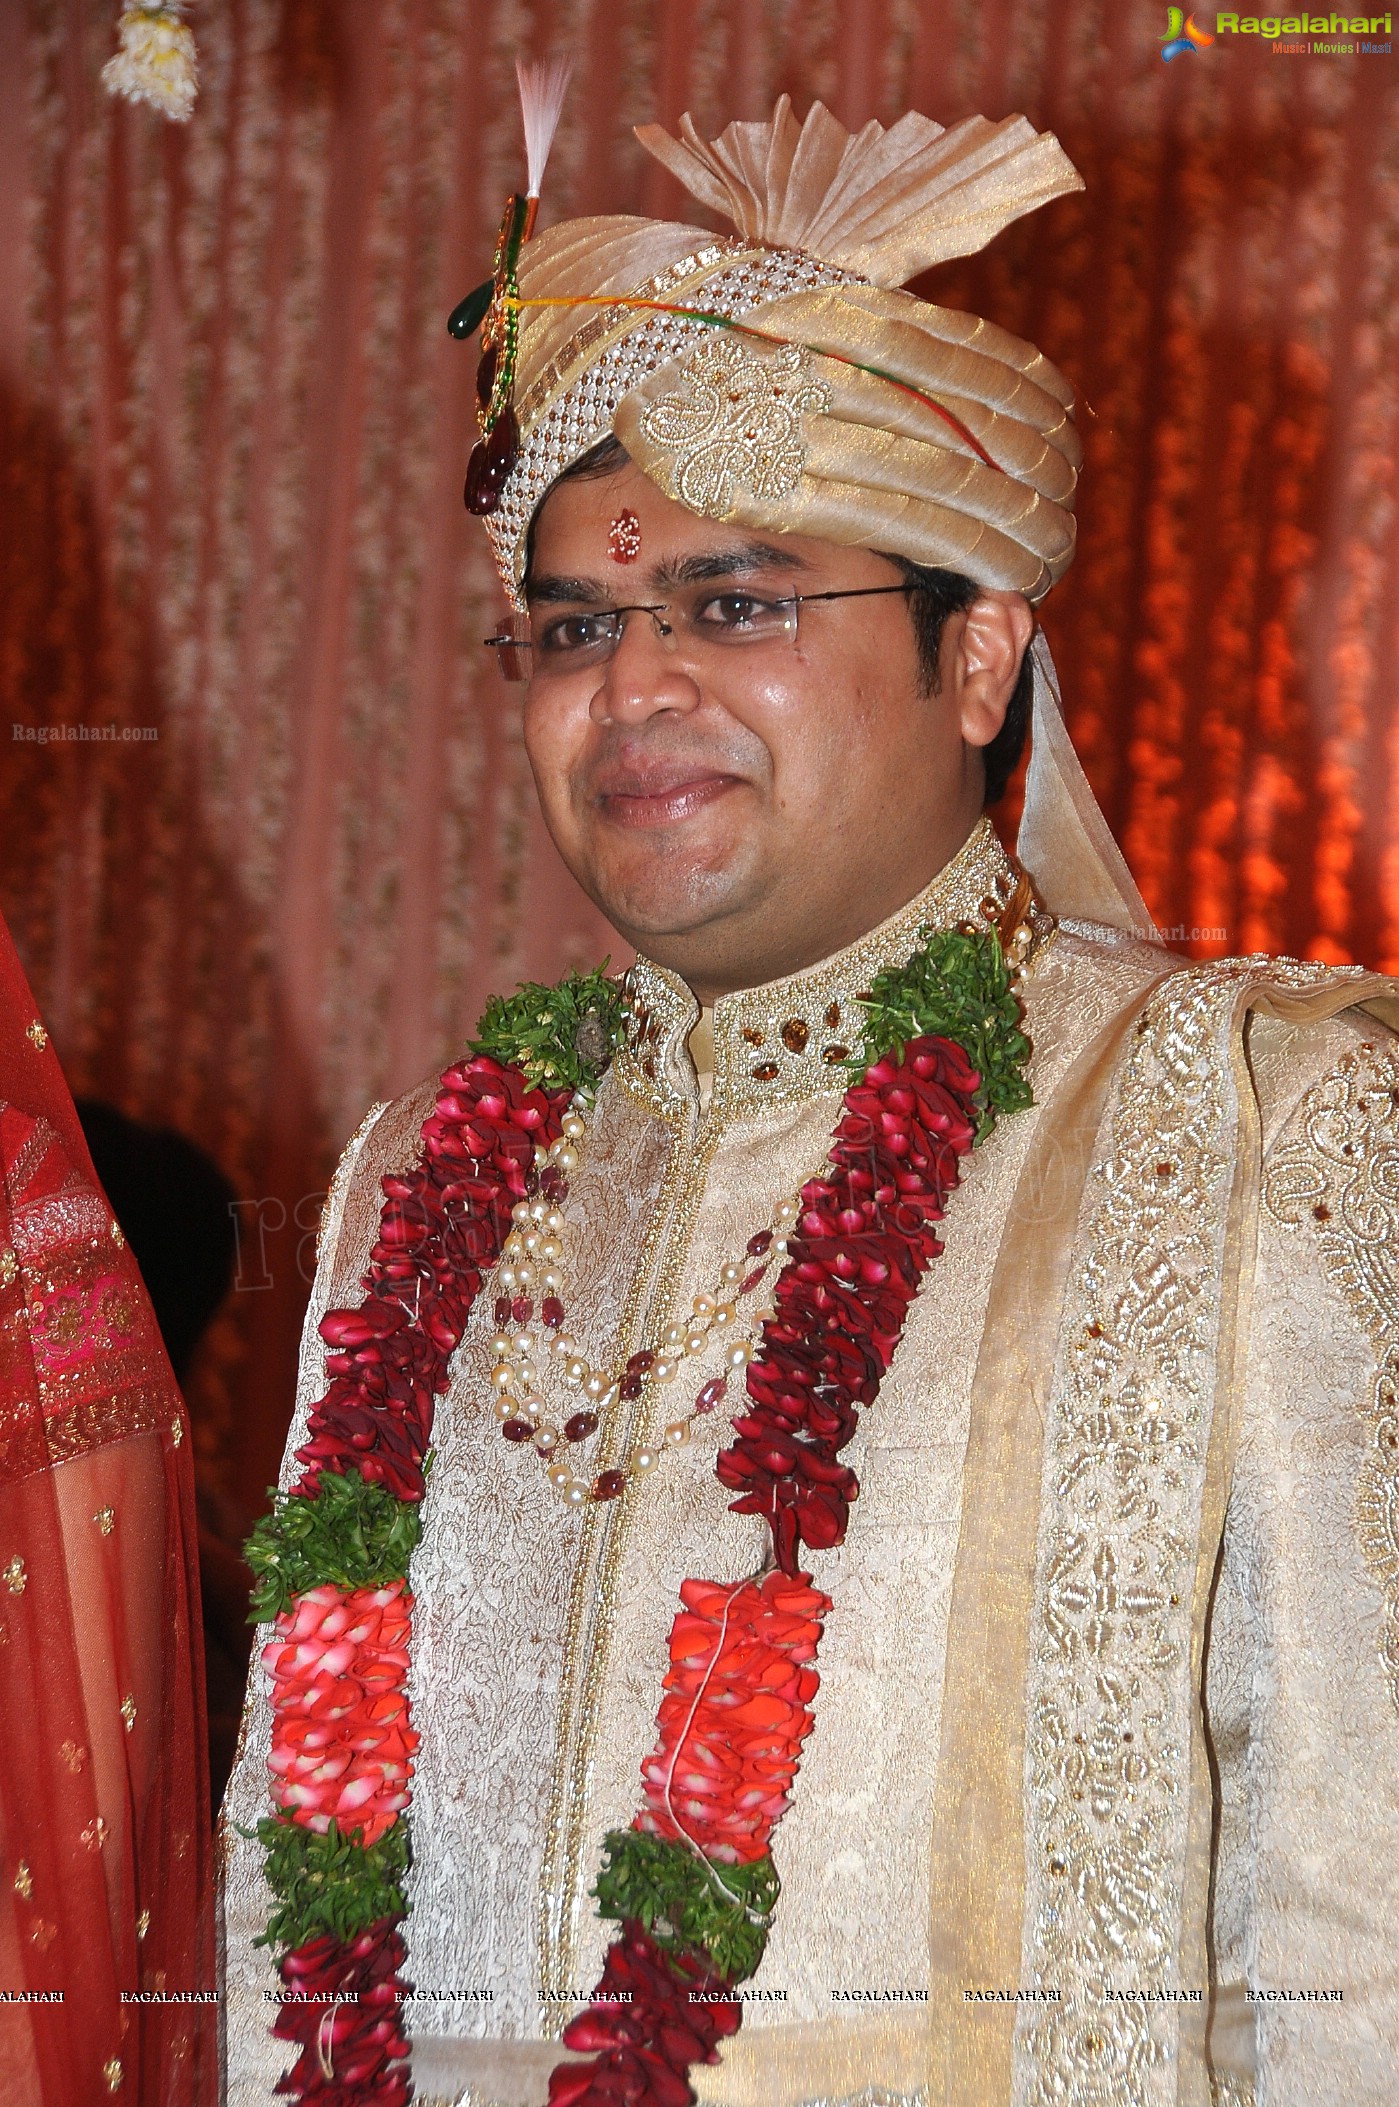 Kanika-Ankush Wedding Reception at N Convention, Hyderabad